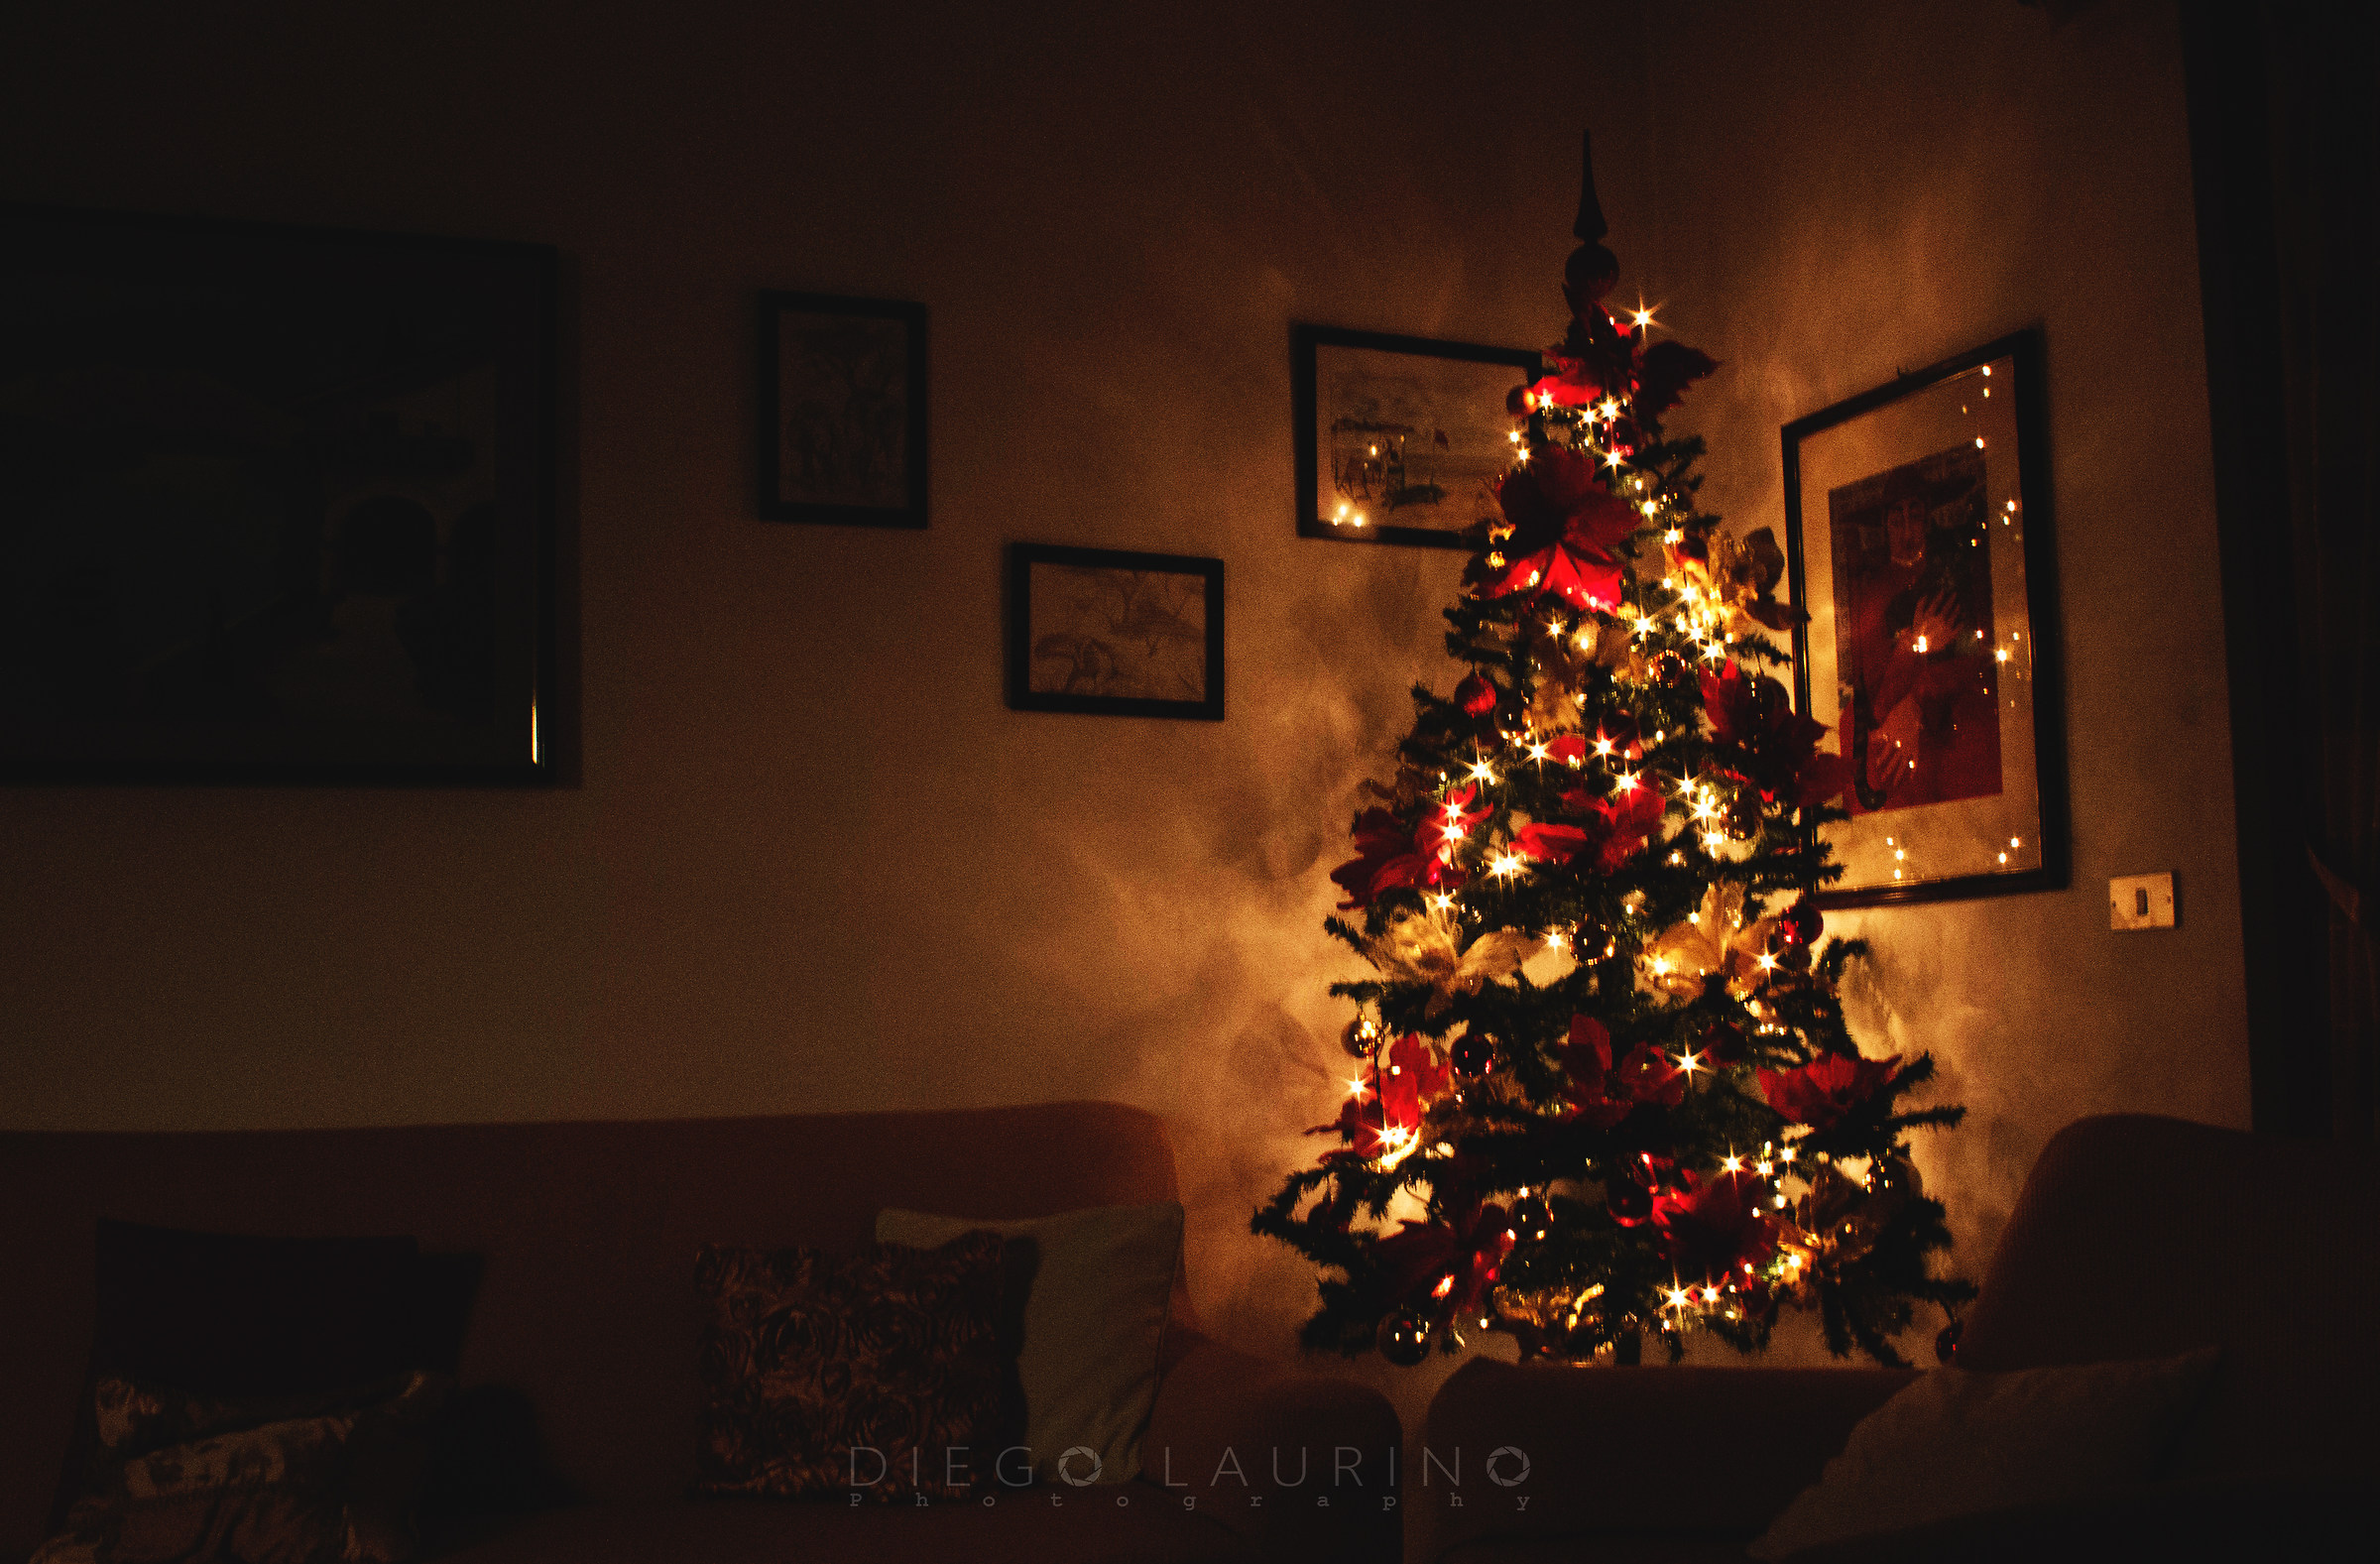 The Christmas tree is like a fire...